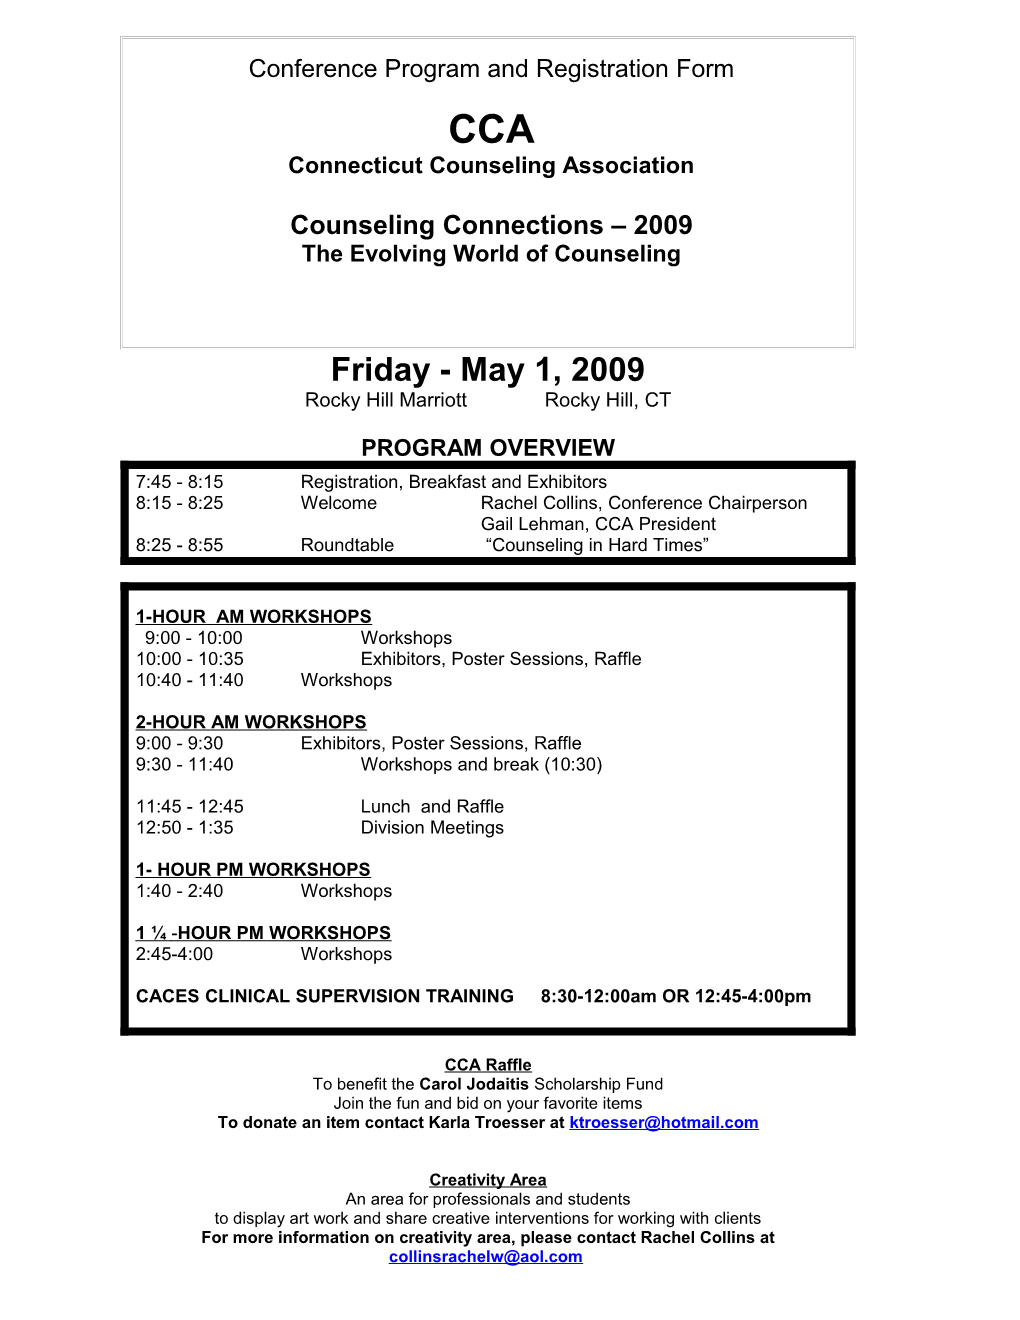 Conference Program And Registration Form